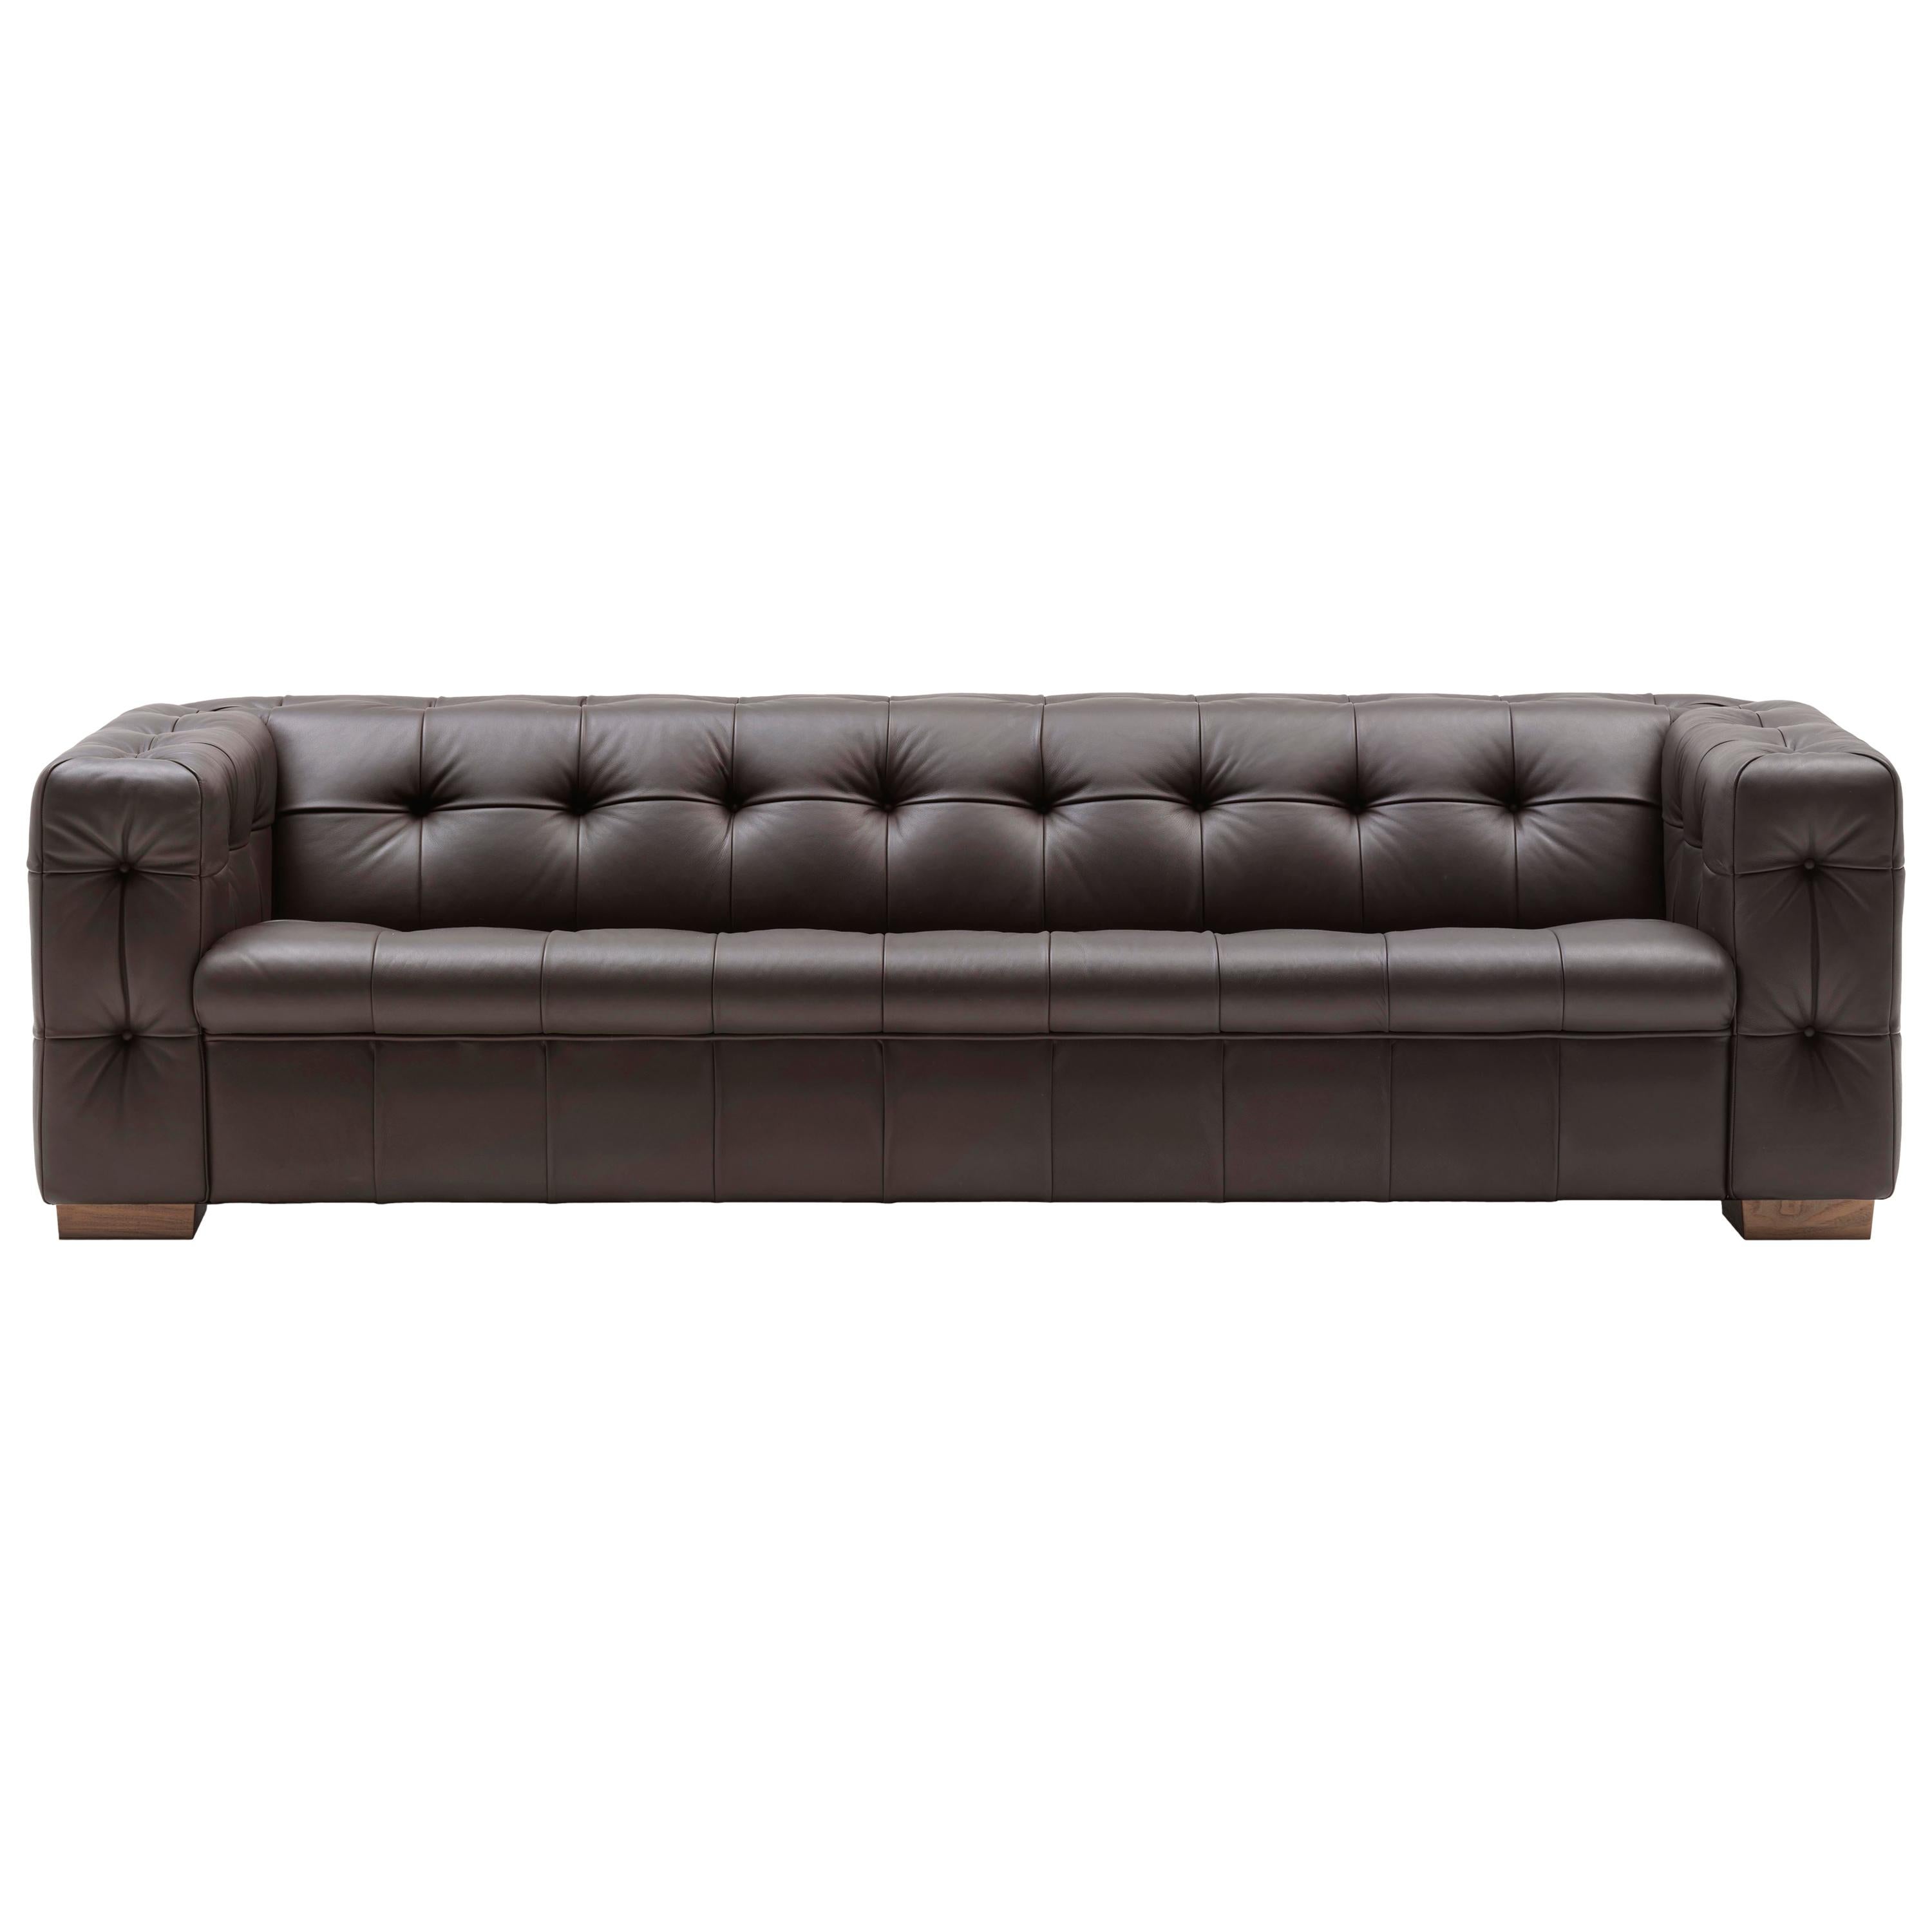 RH-306 - Grand canapé en cuir touffeté Chesterfield de Robert Haussmann